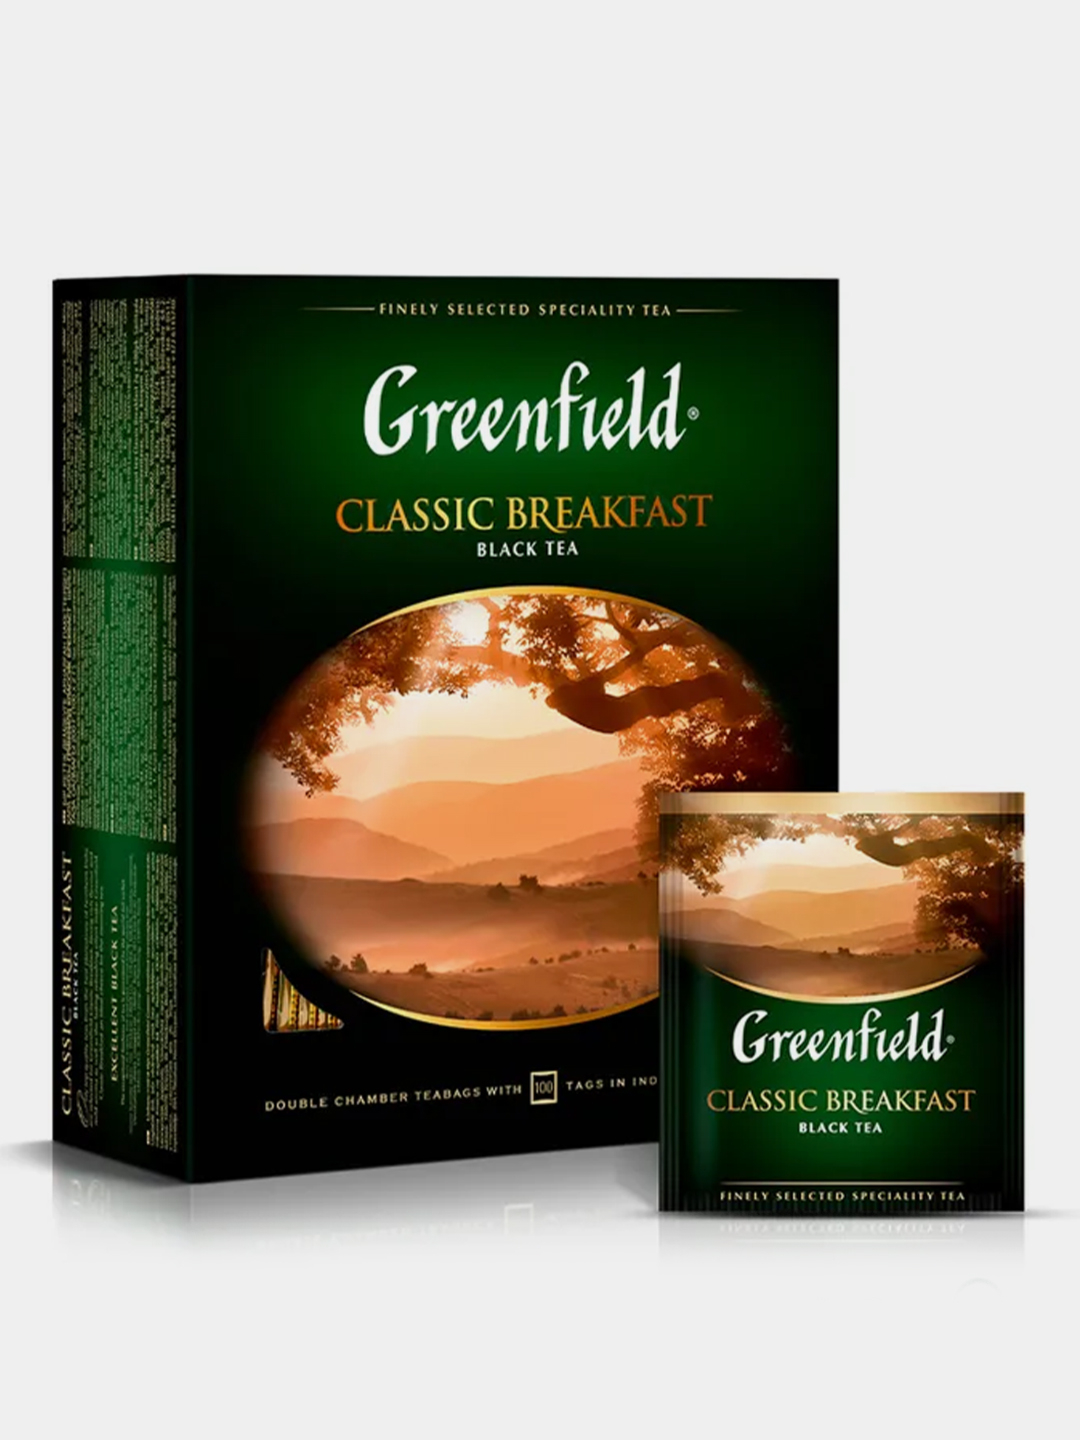 Чай в пакетиках greenfield черный 100. Гринфилд Классик Брекфаст. Greenfield чай Классик Брекфаст 50г. Чай Гринфилд черный в пакетиках. Черный чай в пакетиках Greenfield.